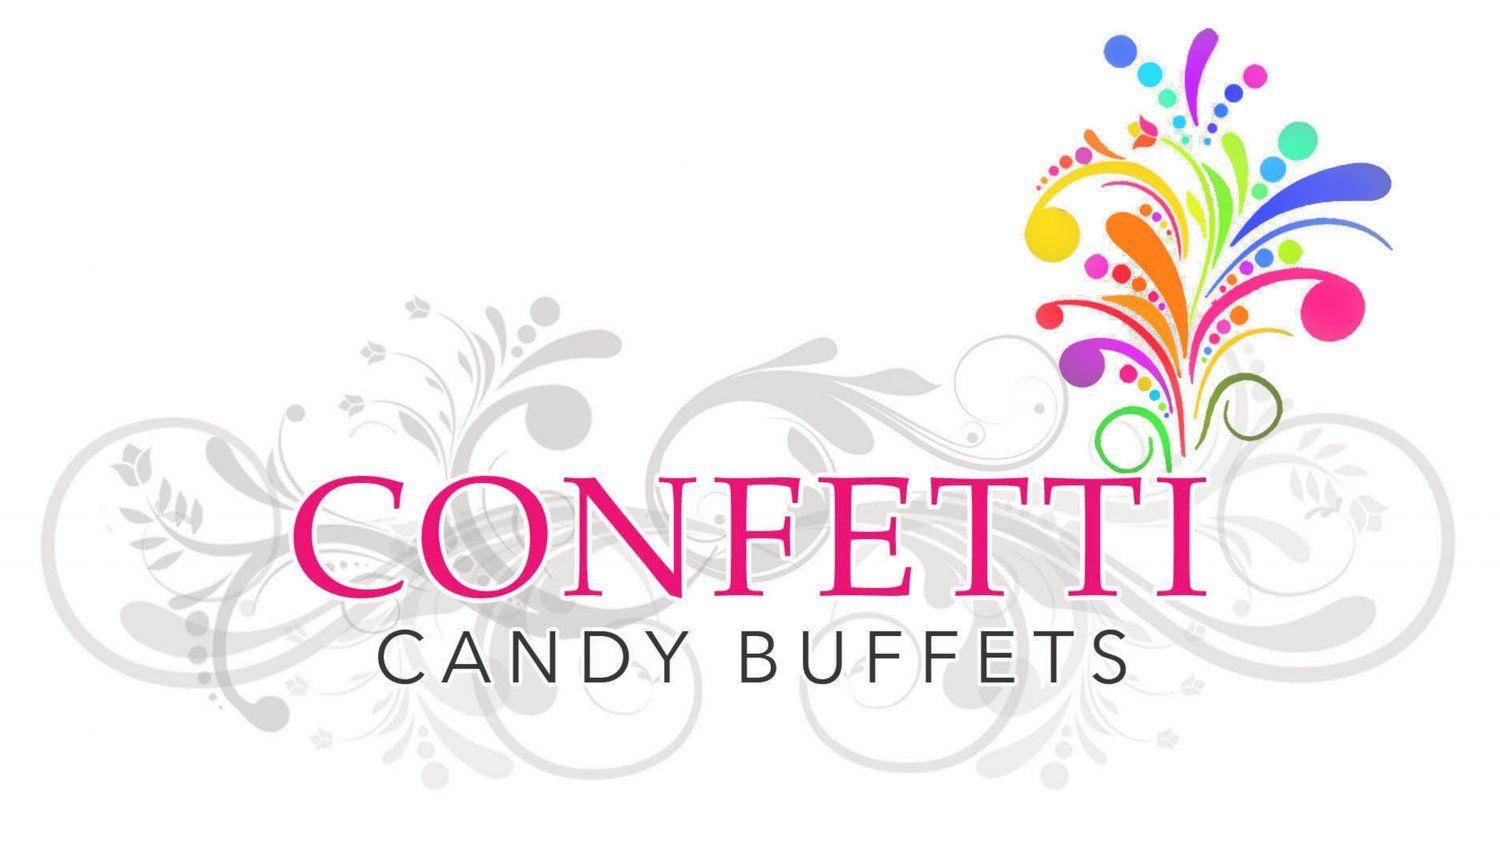 Candy Buffet Company Logo - Confetti Candy Buffets